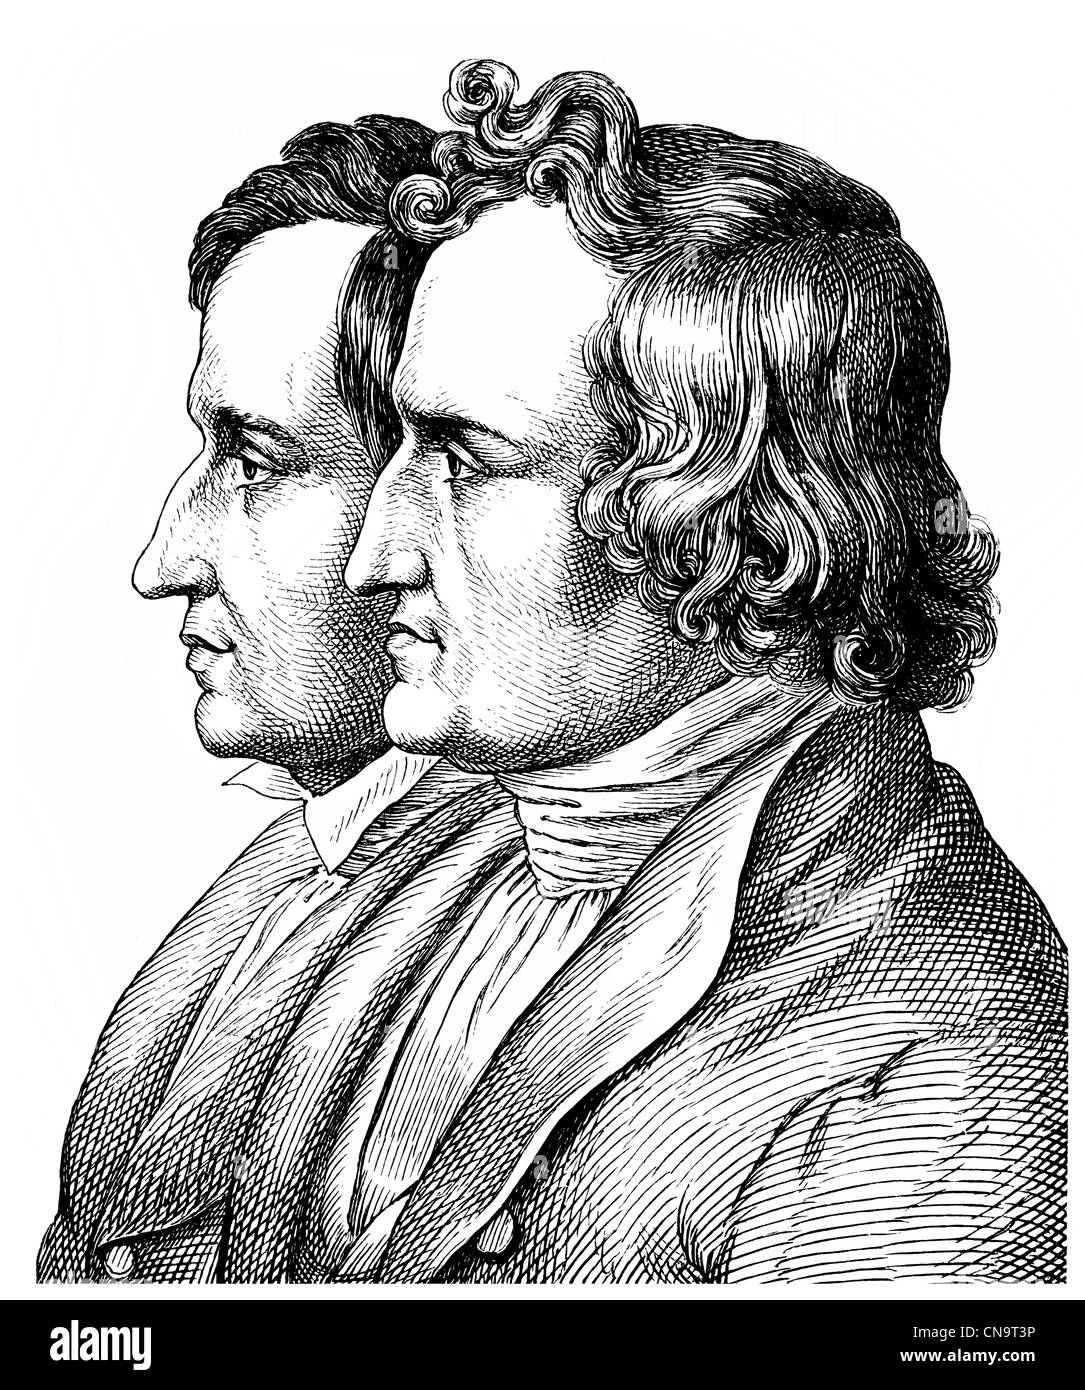 Les frères Grimm, Jacob Ludwig Karl Grimm, 1785 - 1863 et Wilhelm Carl Grimm, 1786 - 1859 Banque D'Images